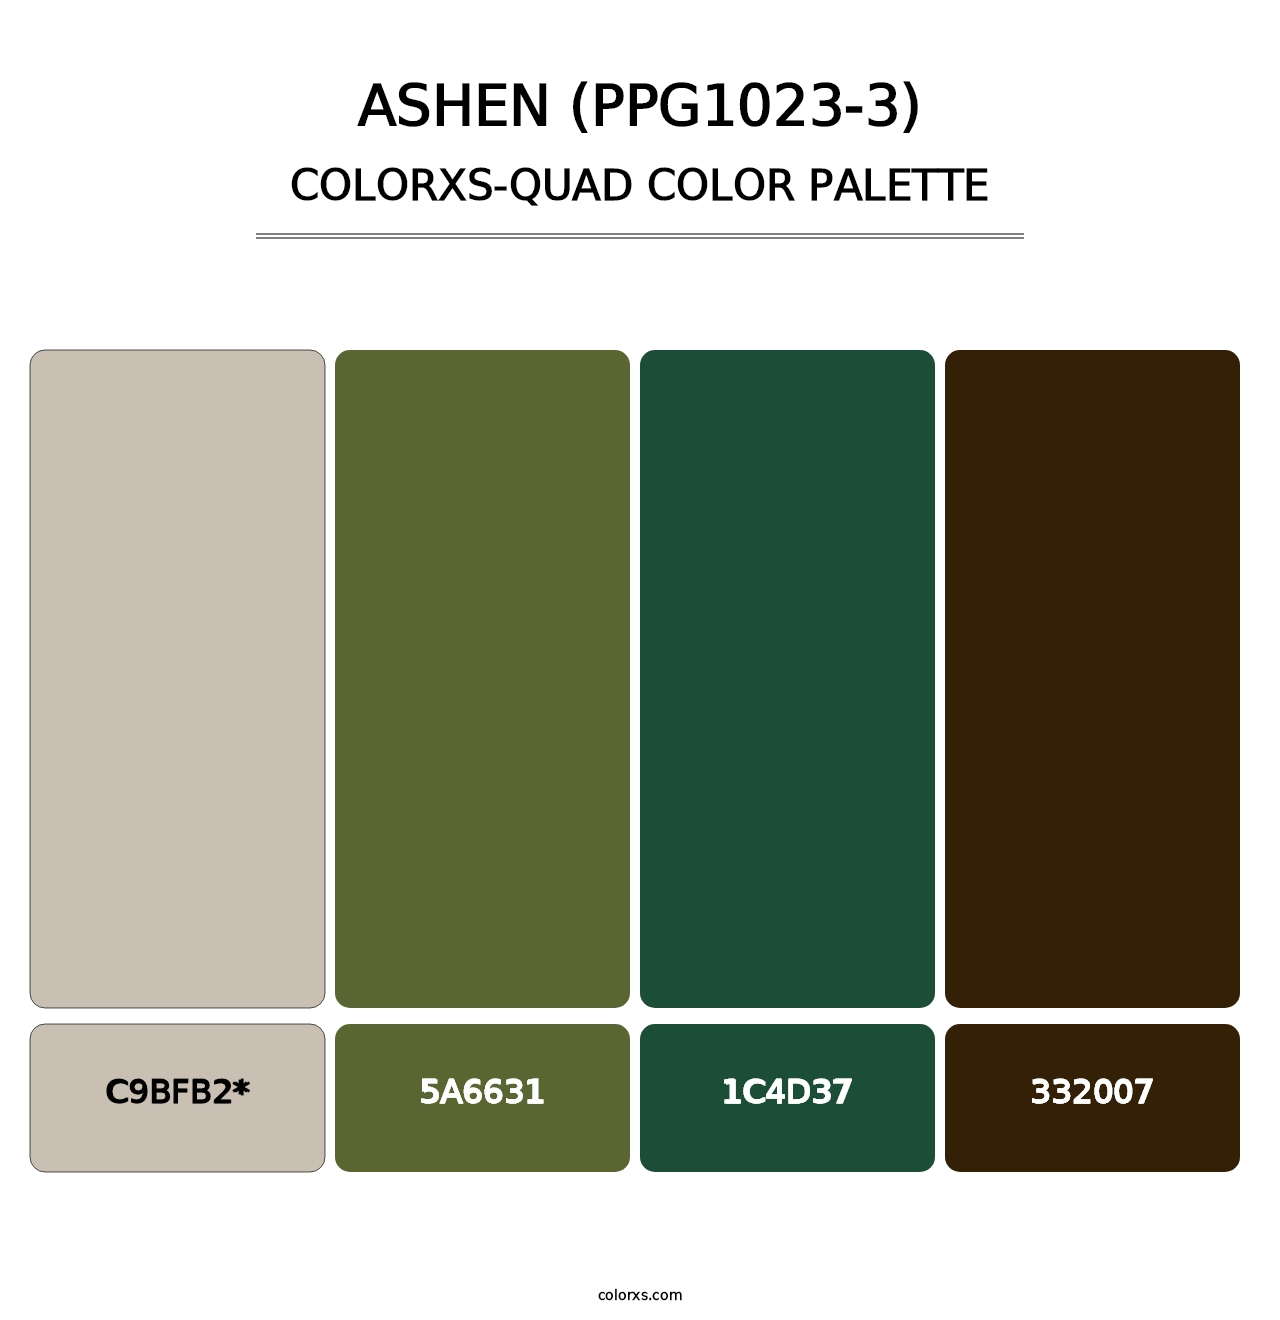 Ashen (PPG1023-3) - Colorxs Quad Palette